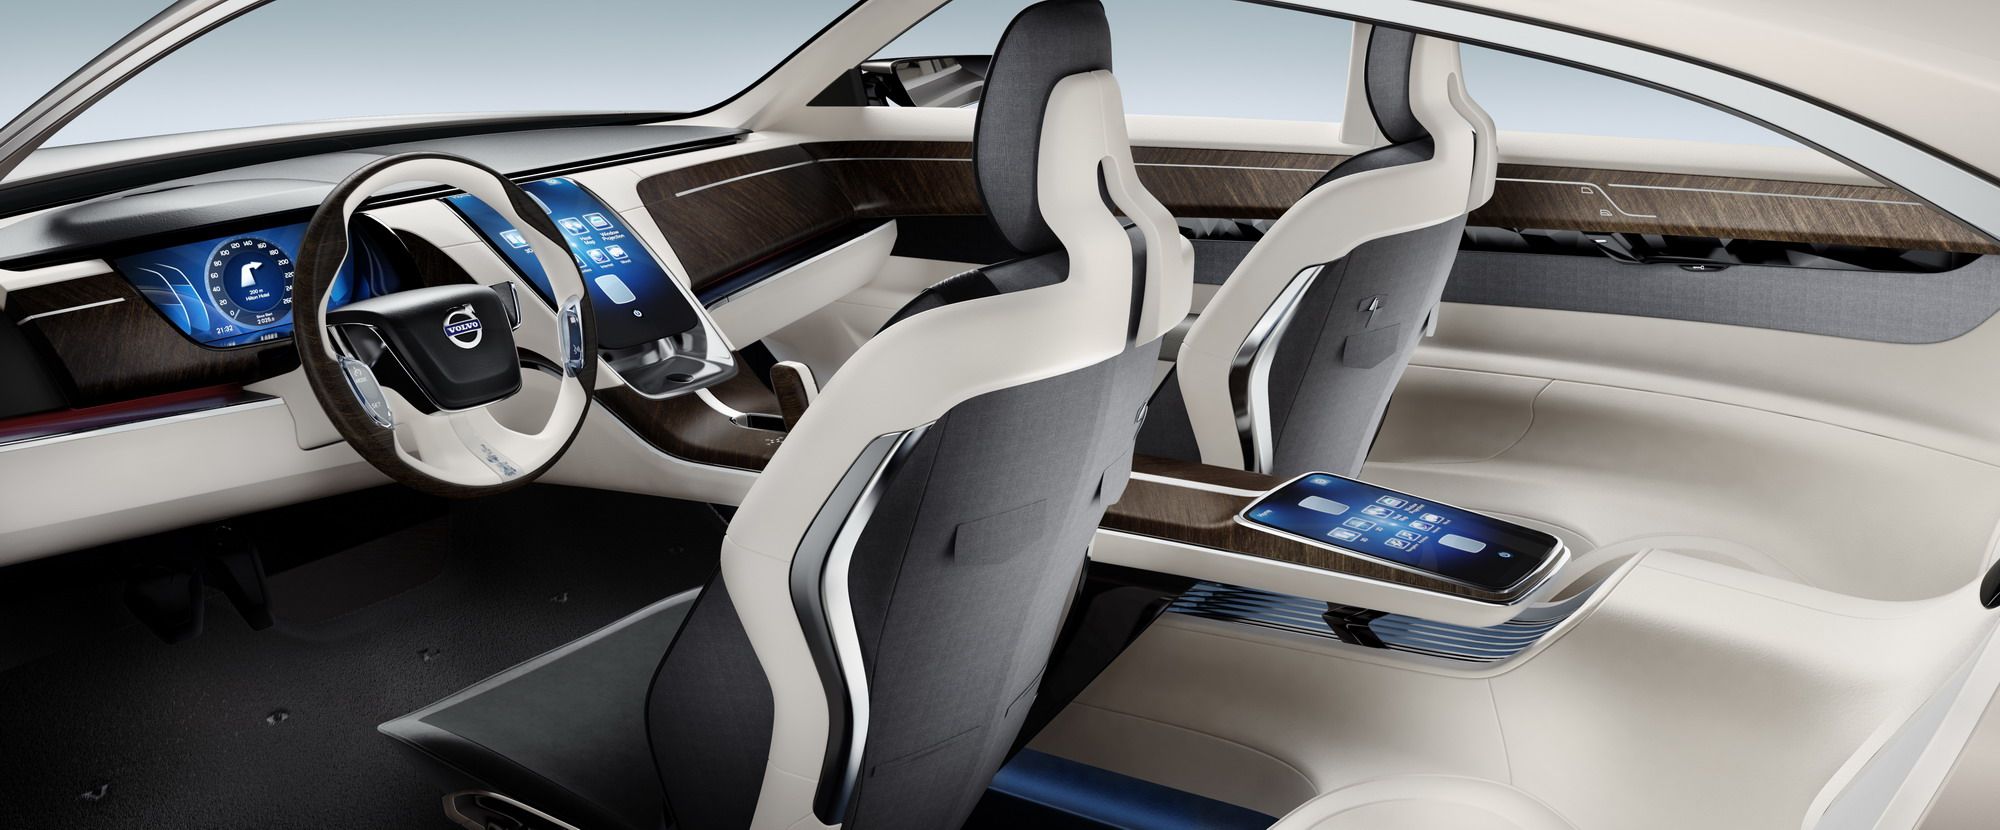 2011 Volvo Universe Concept